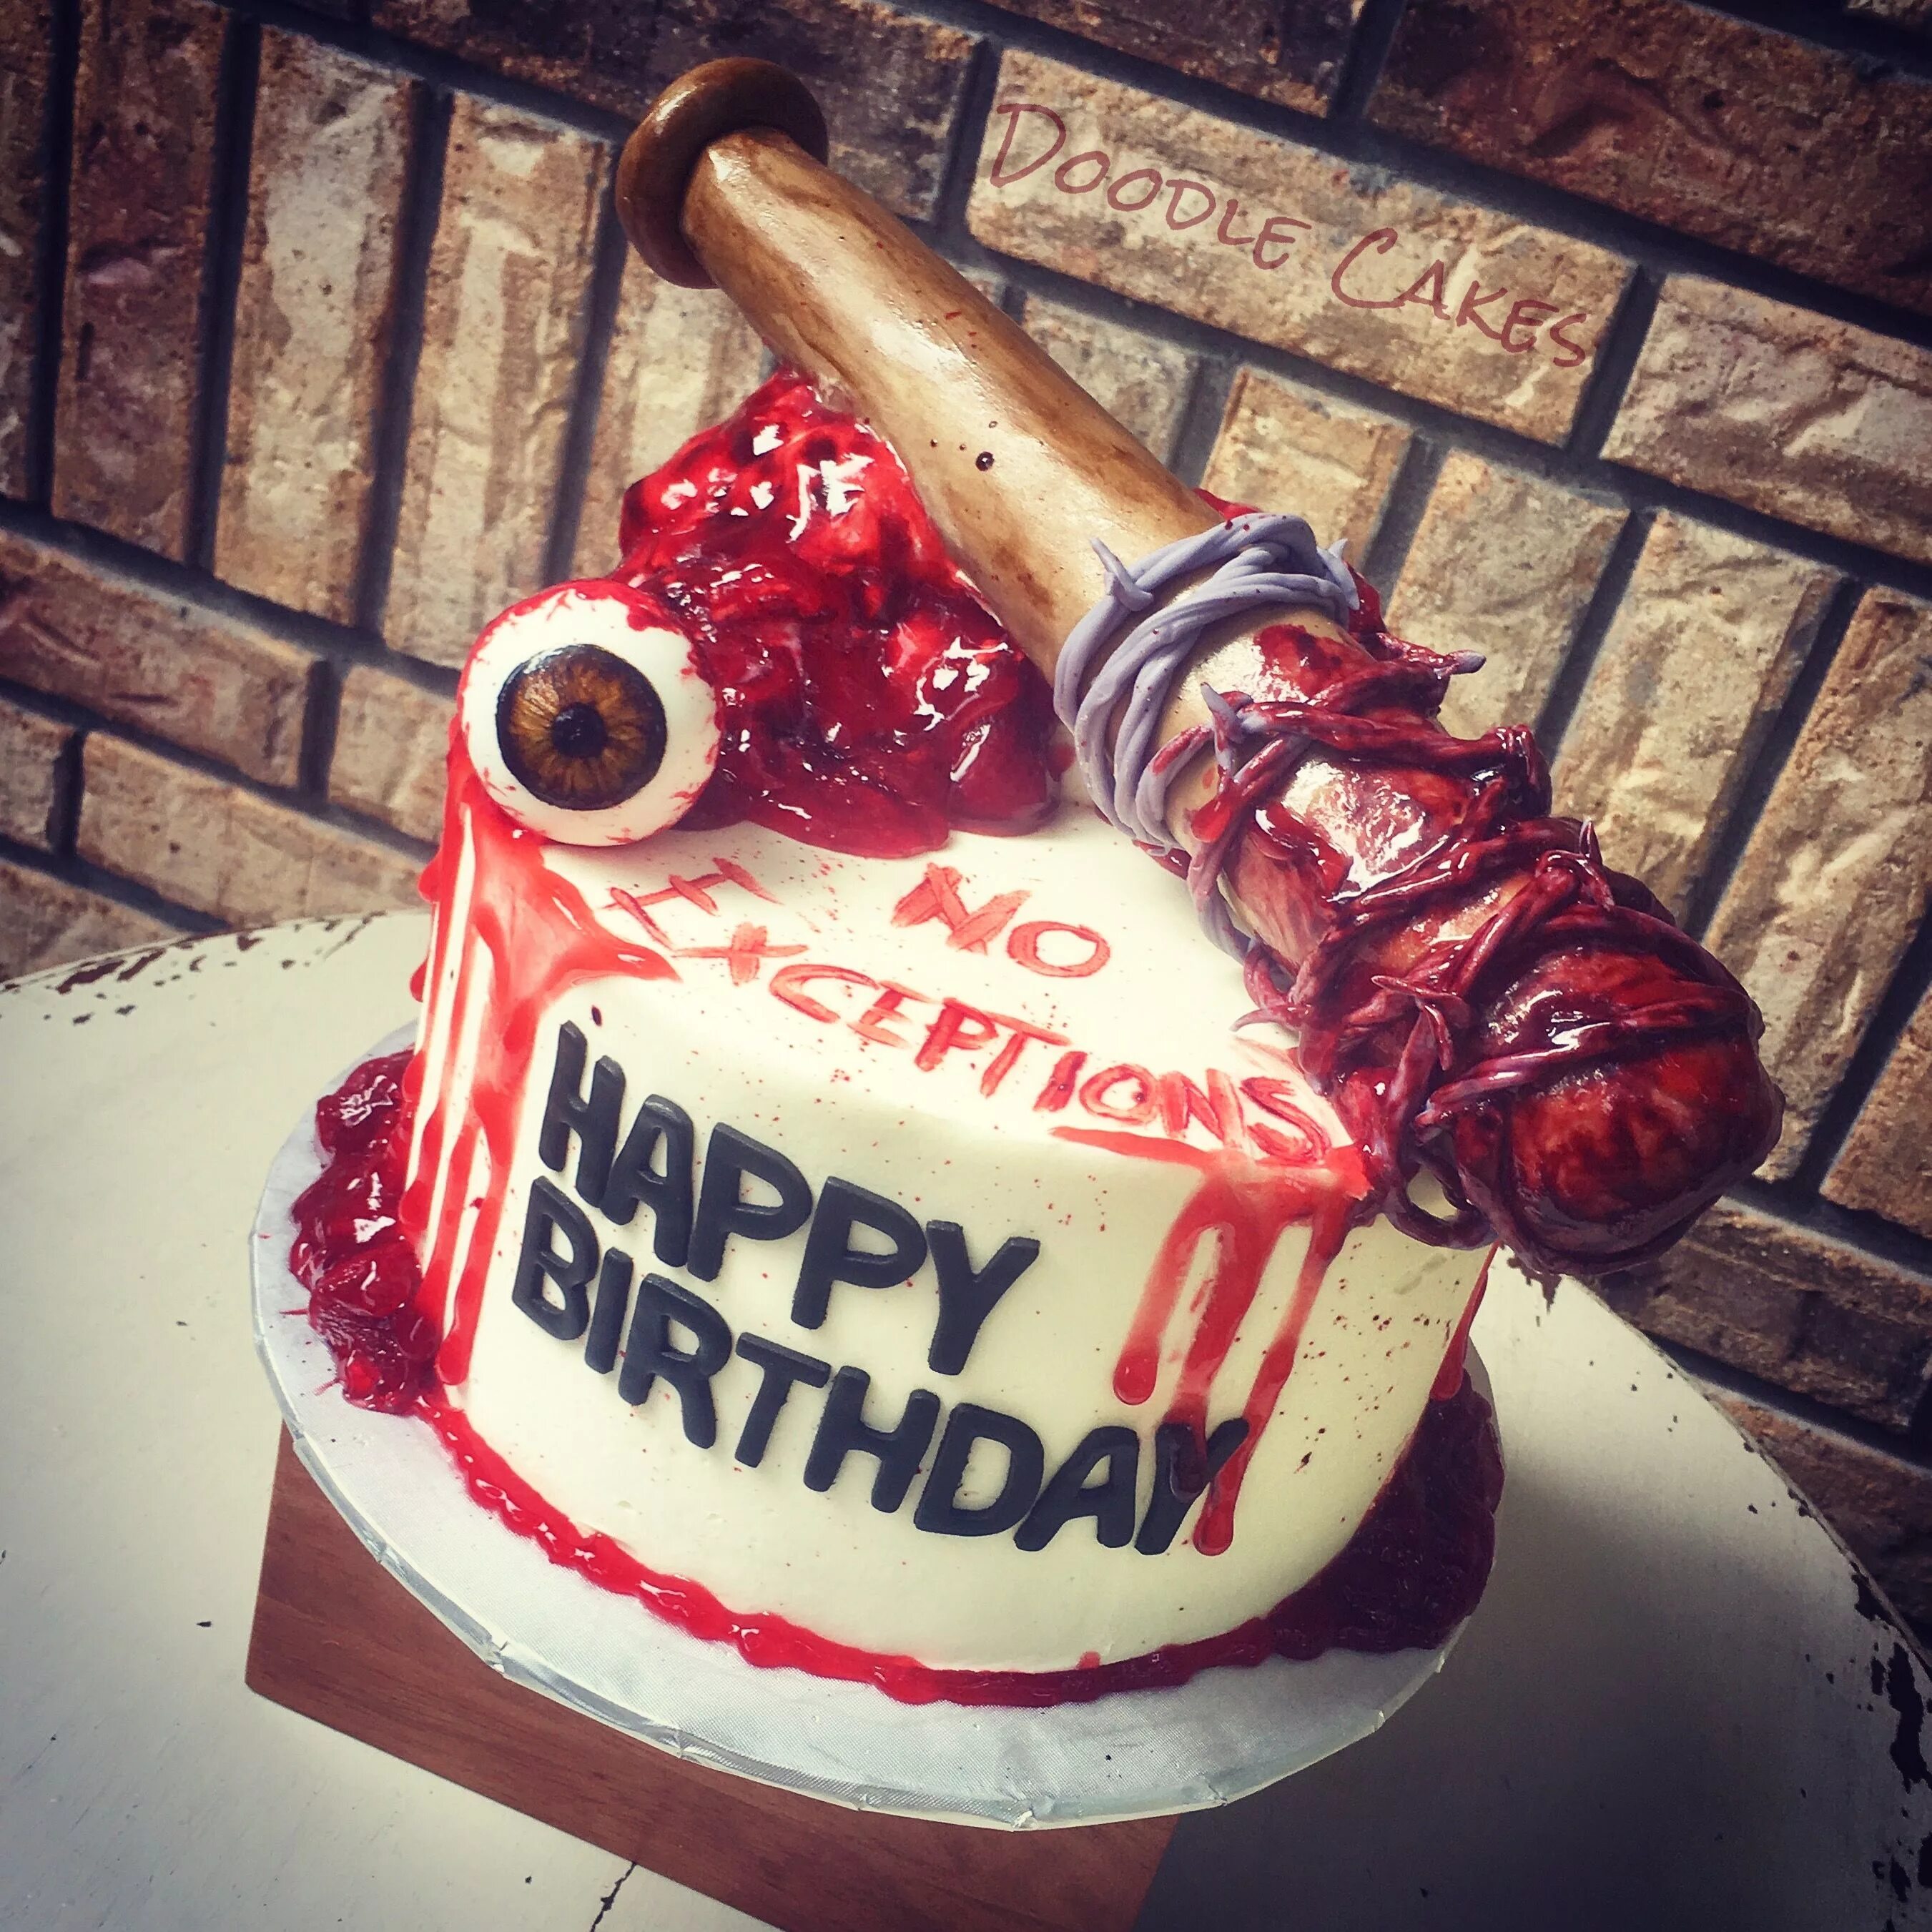 This is my cake. Страшный торт на день рождения. С днем рождения в стиле хоррор. Крутые торты.